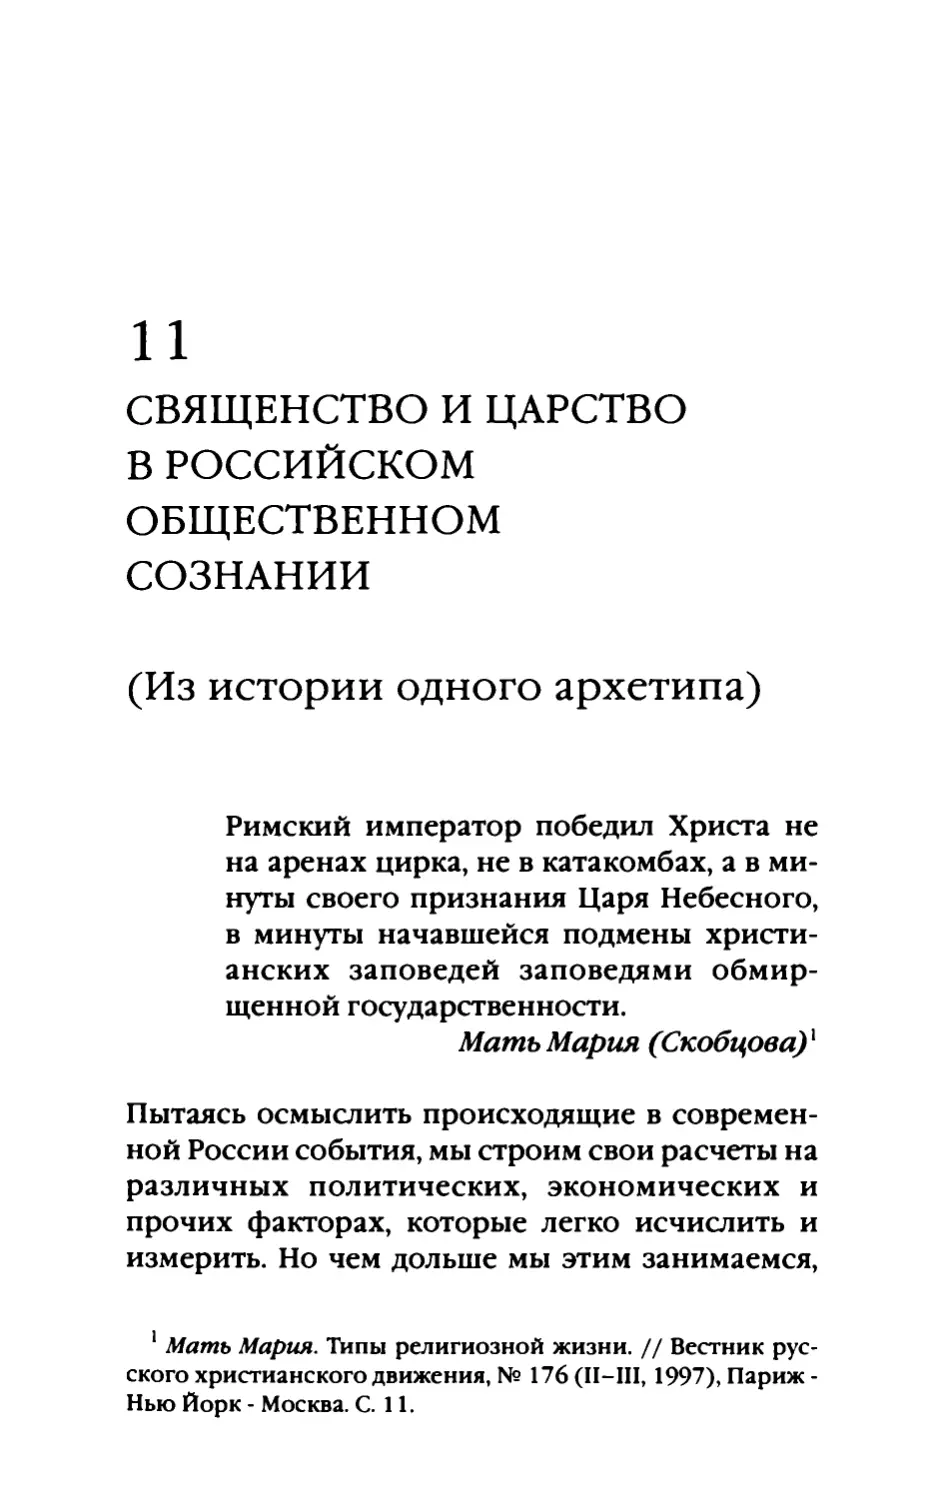 11. Священство и царство в российском общественном сознании